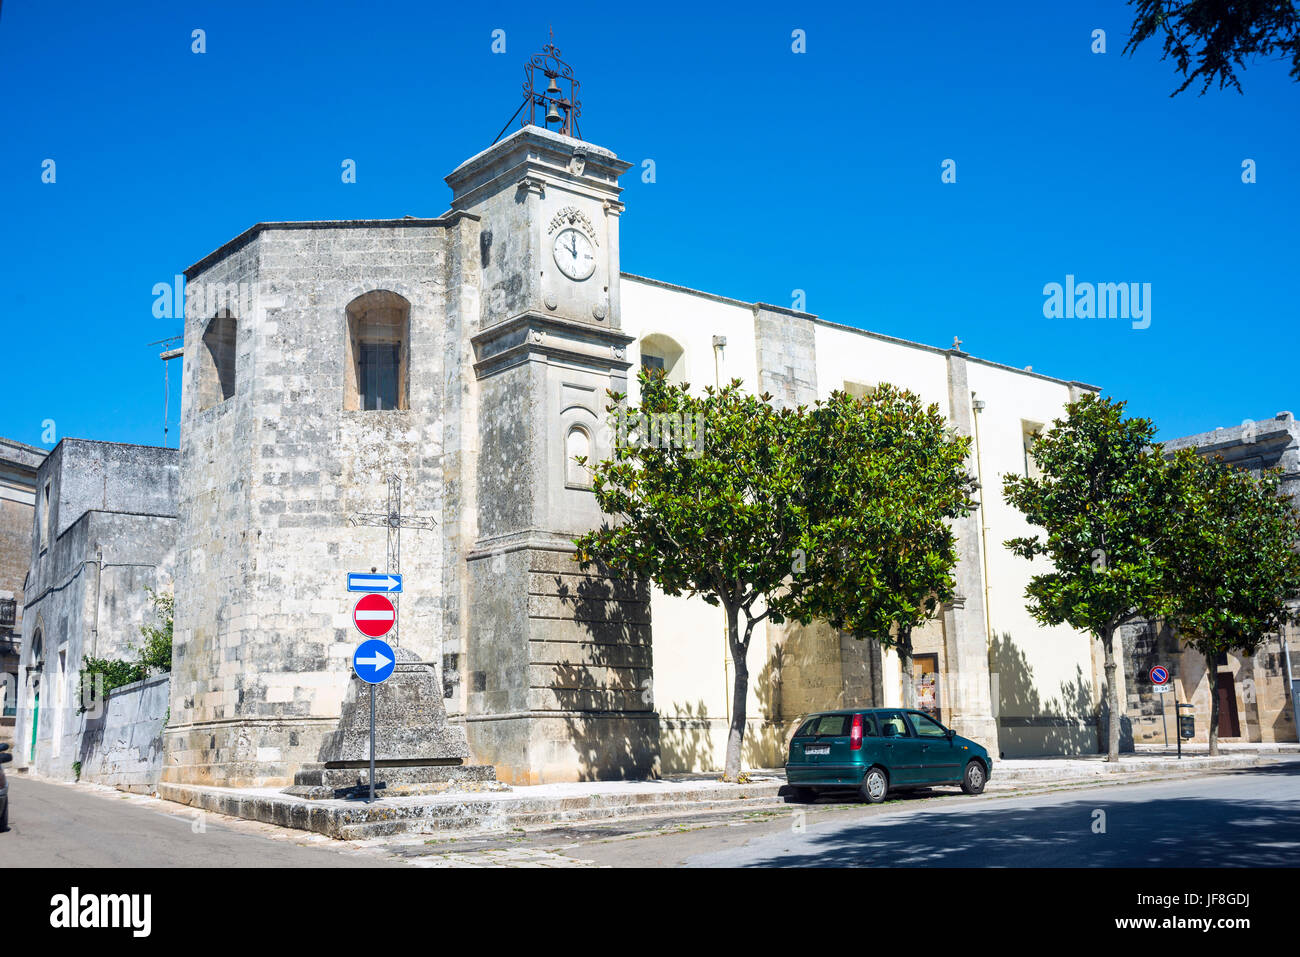 Specchia gallone es un pequeño pueblo en la provincia de Lecce, Puglia, Italia. La iglesia parroquial se encuentra en el centro de la aldea. Foto de stock